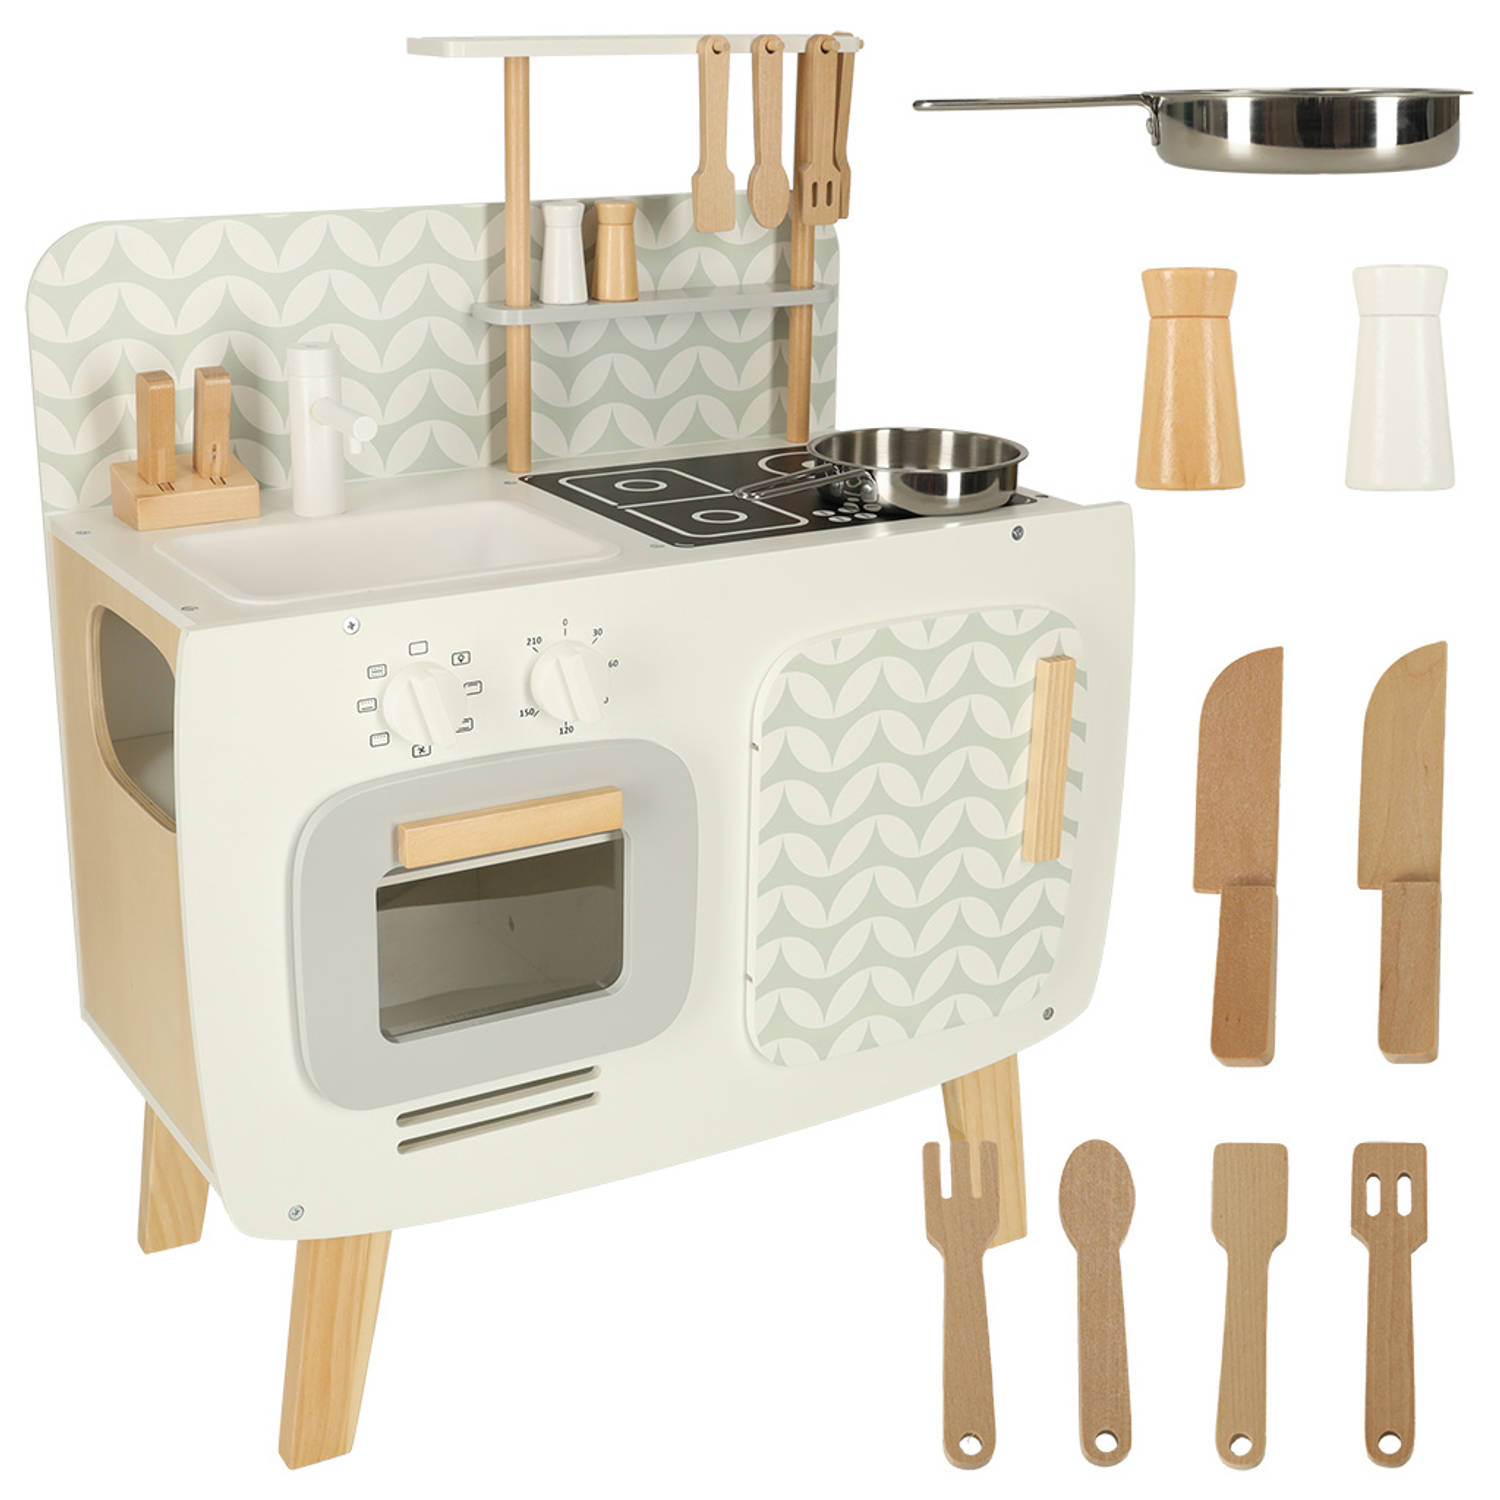 Lulilo vintage retro speelkeuken met accessoires Speelgoed keuken met kookplaat, wasbak en oven 58 x